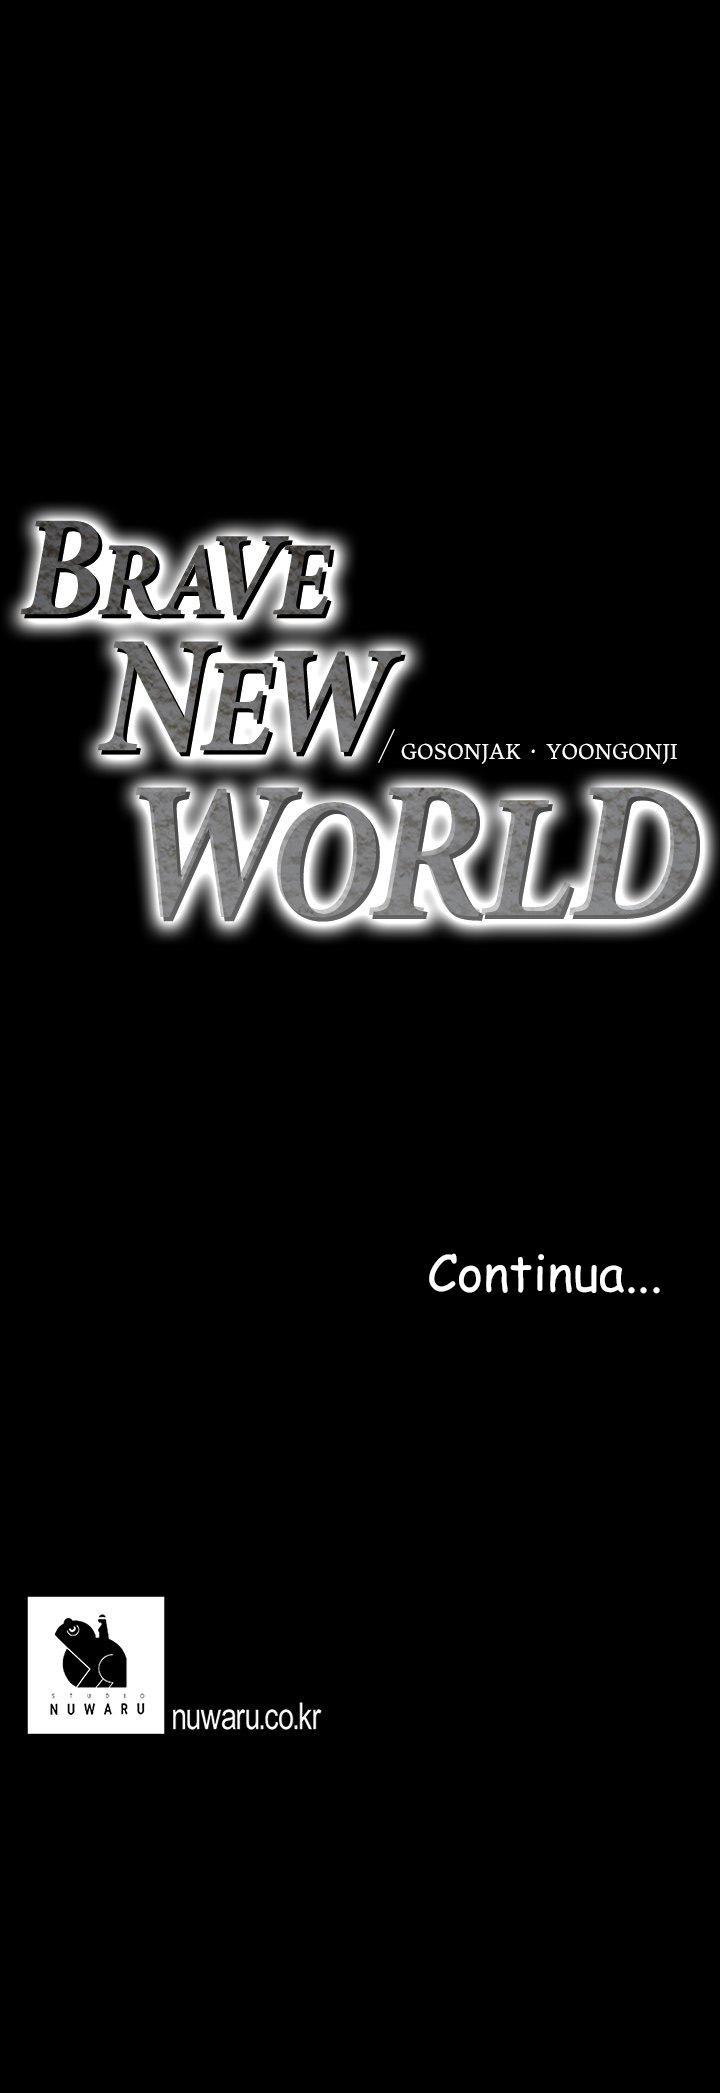 [Gonjison] A Wonderful New World Capitolo 31 - Page 13